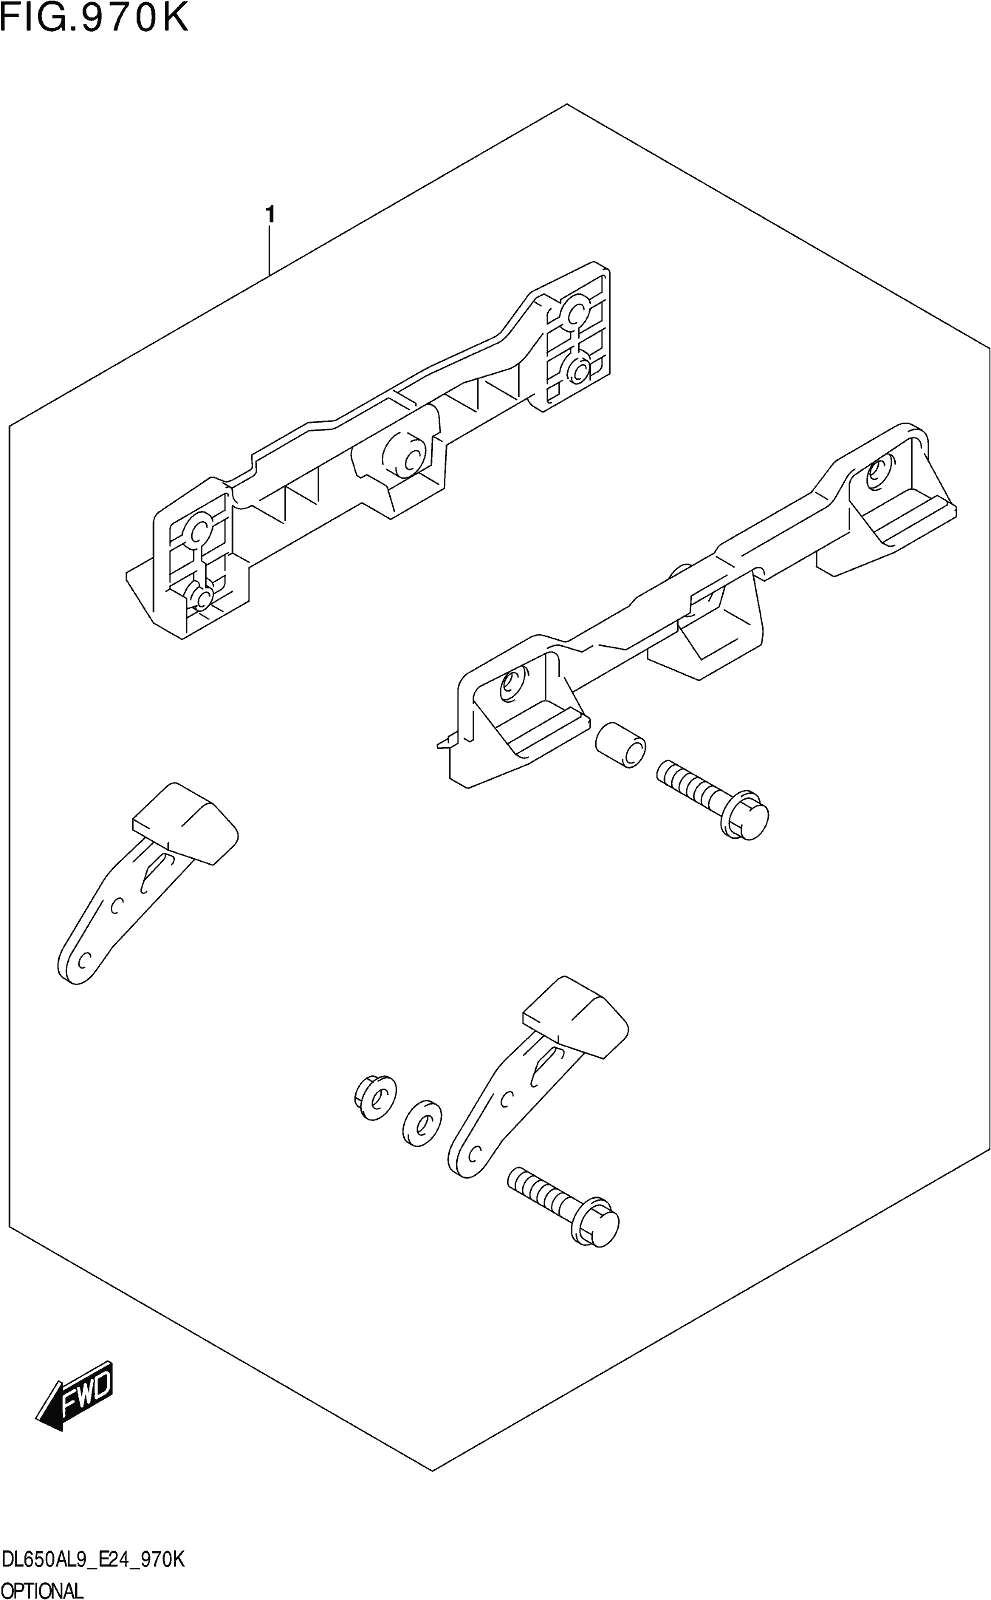 Fig.970k Optional (side Case Bracket Set)